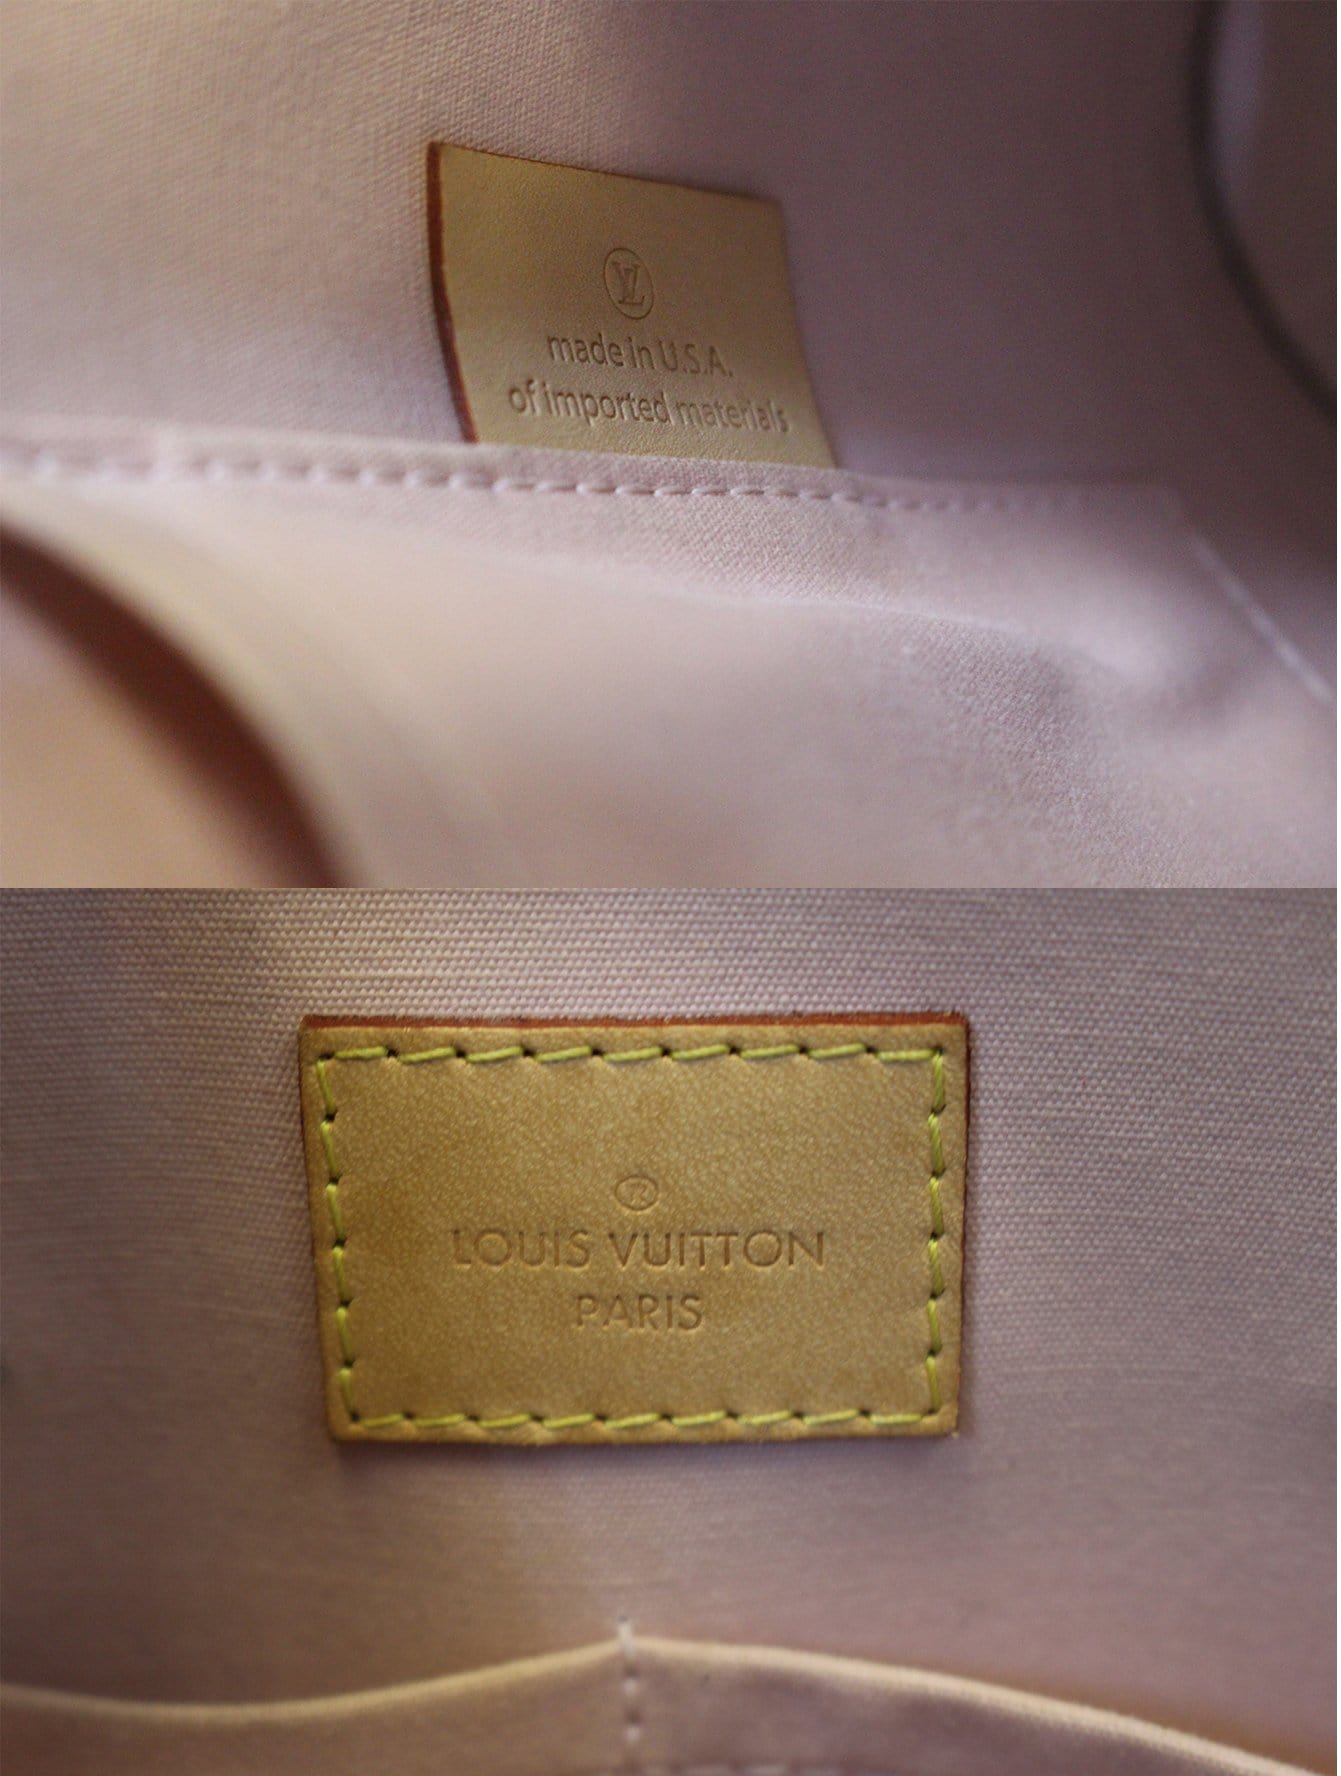 Louis Vuitton Alma PM in Rose Ballerine Monogram Vernis - SOLD